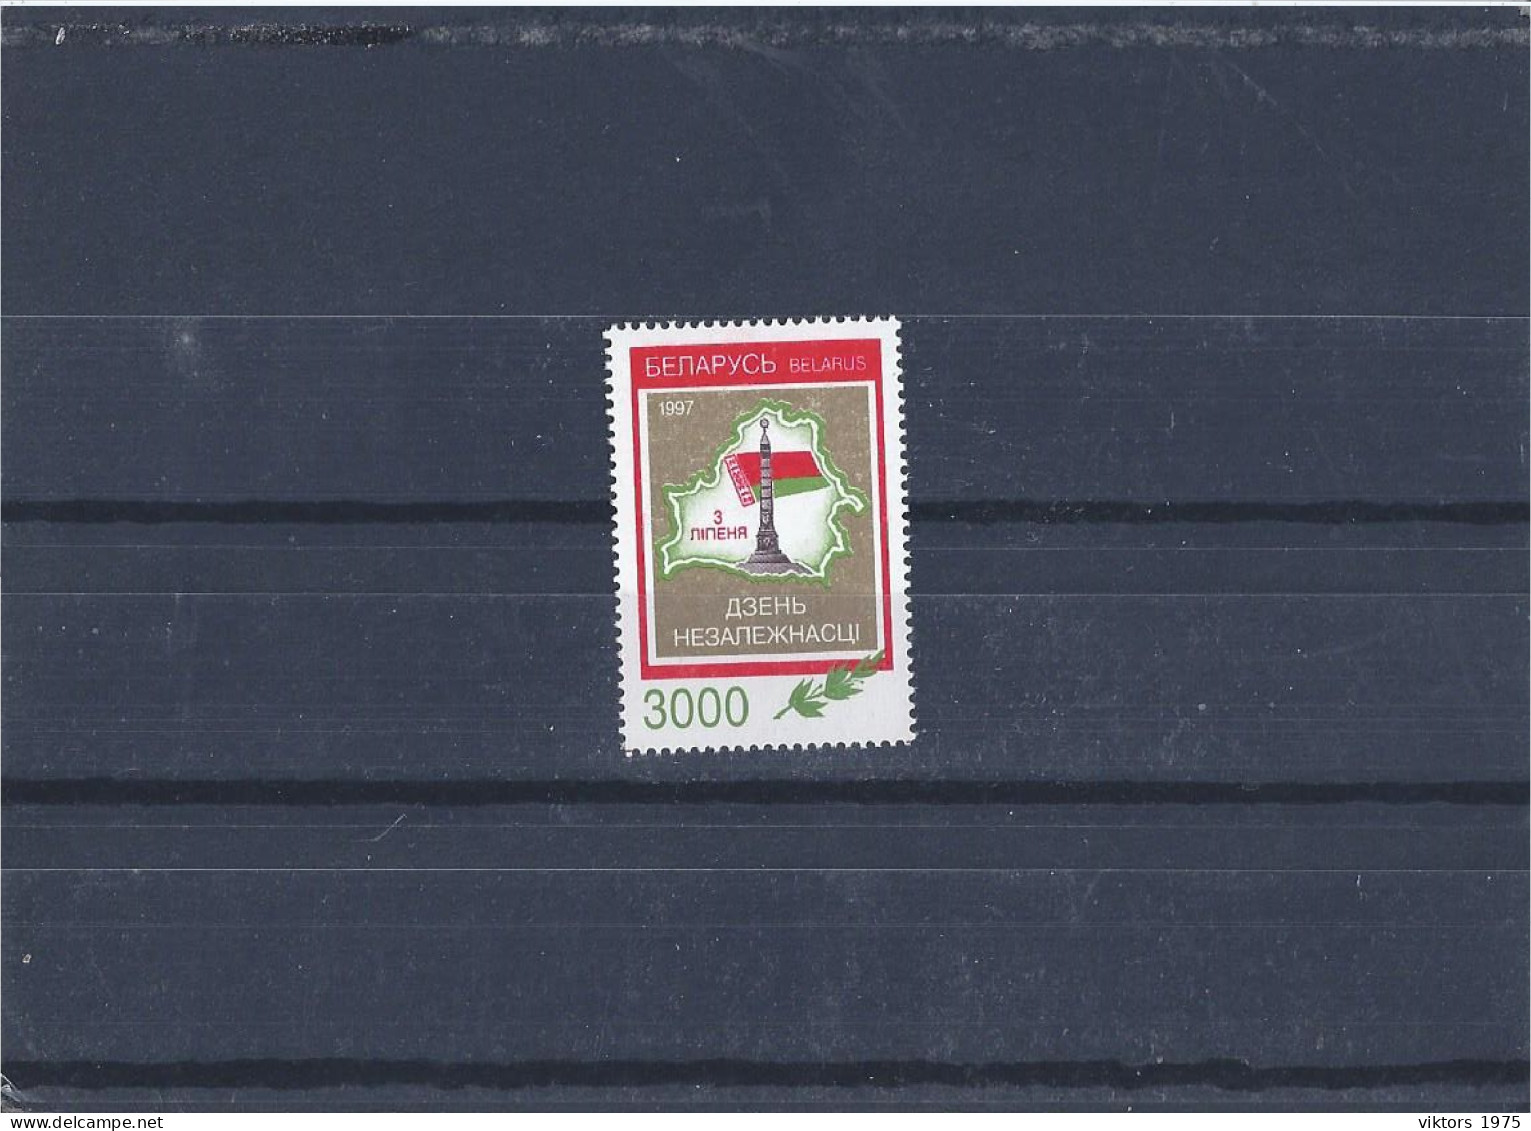 MNH Stamp Nr.226 In MICHEL Catalog - Belarus